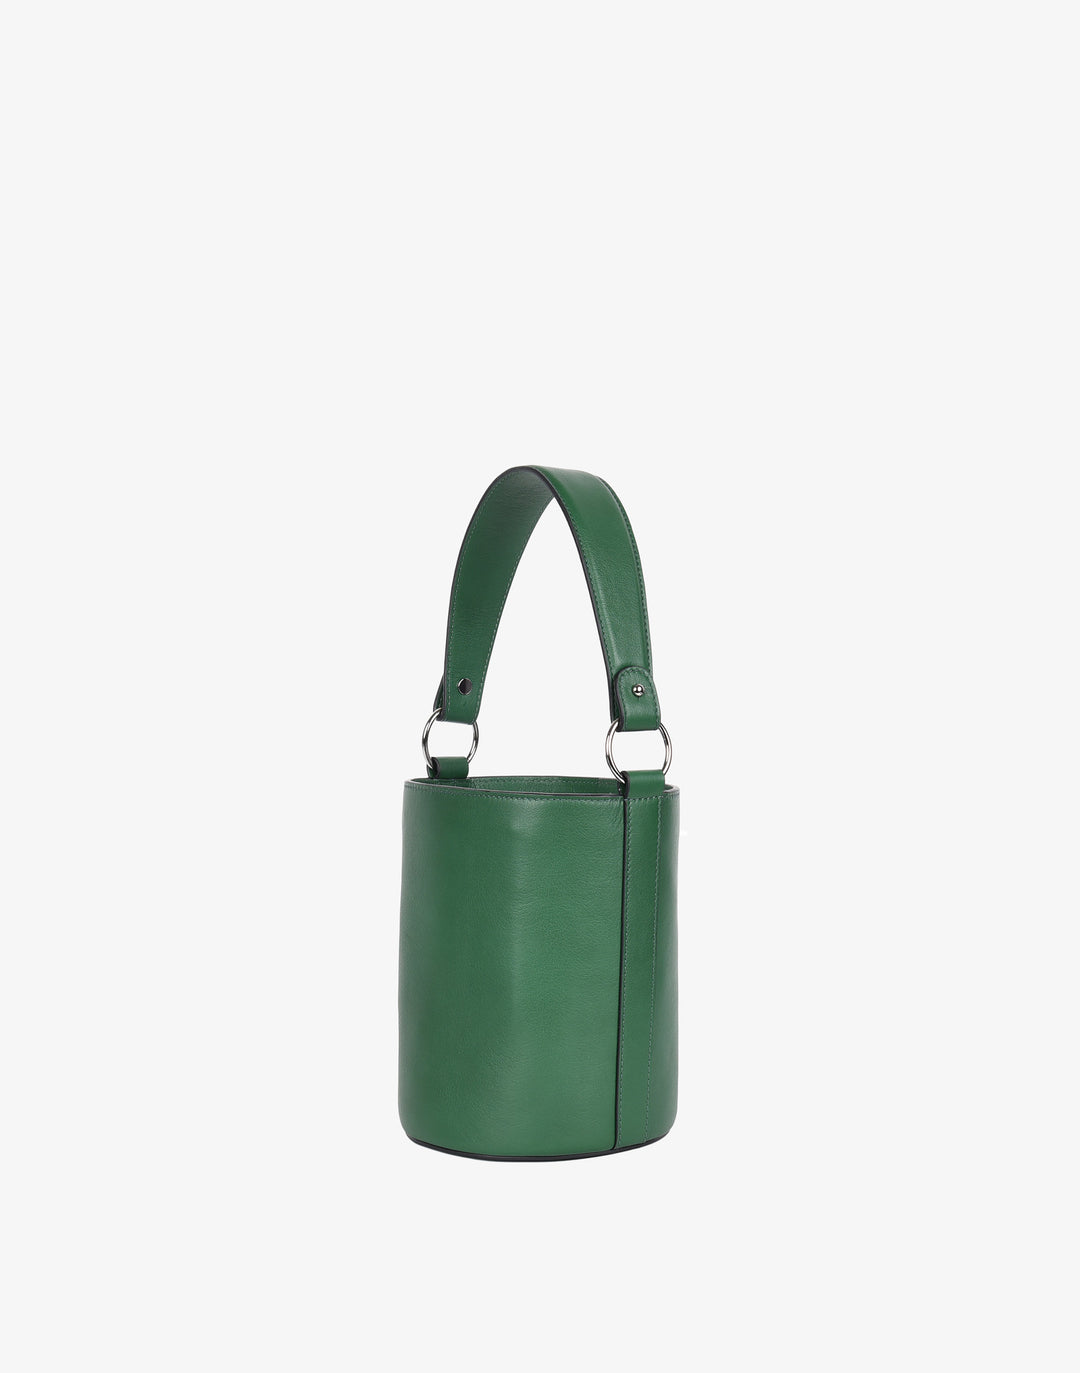 Hyer Goods Luxe Cinch Bucket Bag